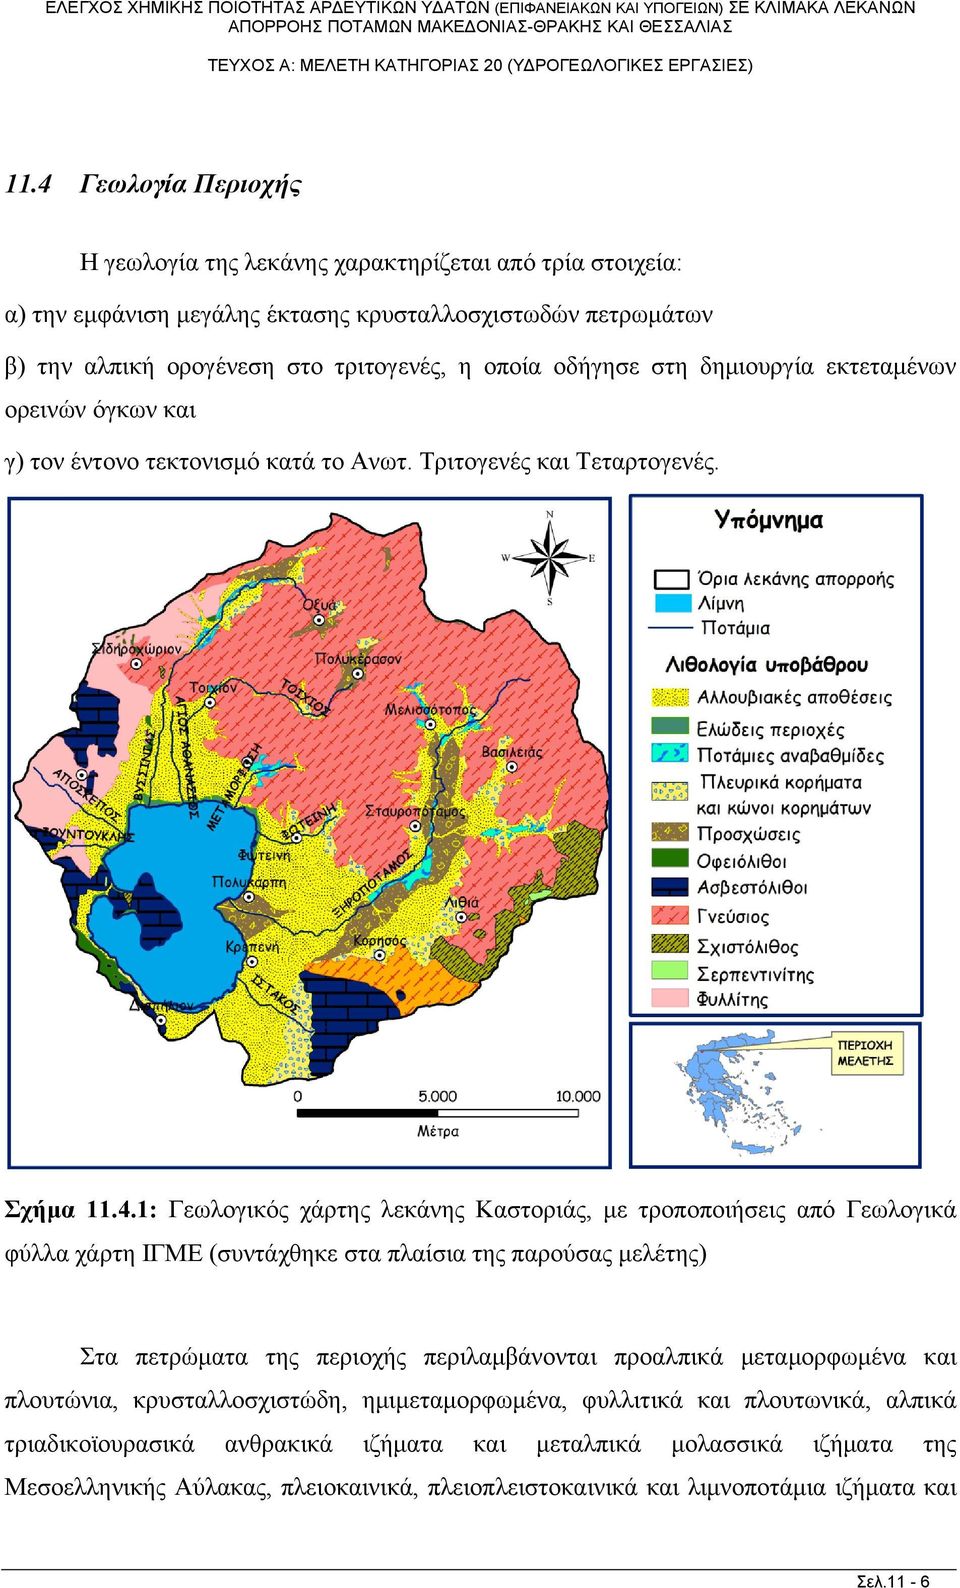 1: Γεωλογικός χάρτης λεκάνης Καστοριάς, με τροποποιήσεις από Γεωλογικά φύλλα χάρτη ΙΓΜΕ (συντάχθηκε στα πλαίσια της παρούσας μελέτης) Στα πετρώματα της περιοχής περιλαμβάνονται προαλπικά